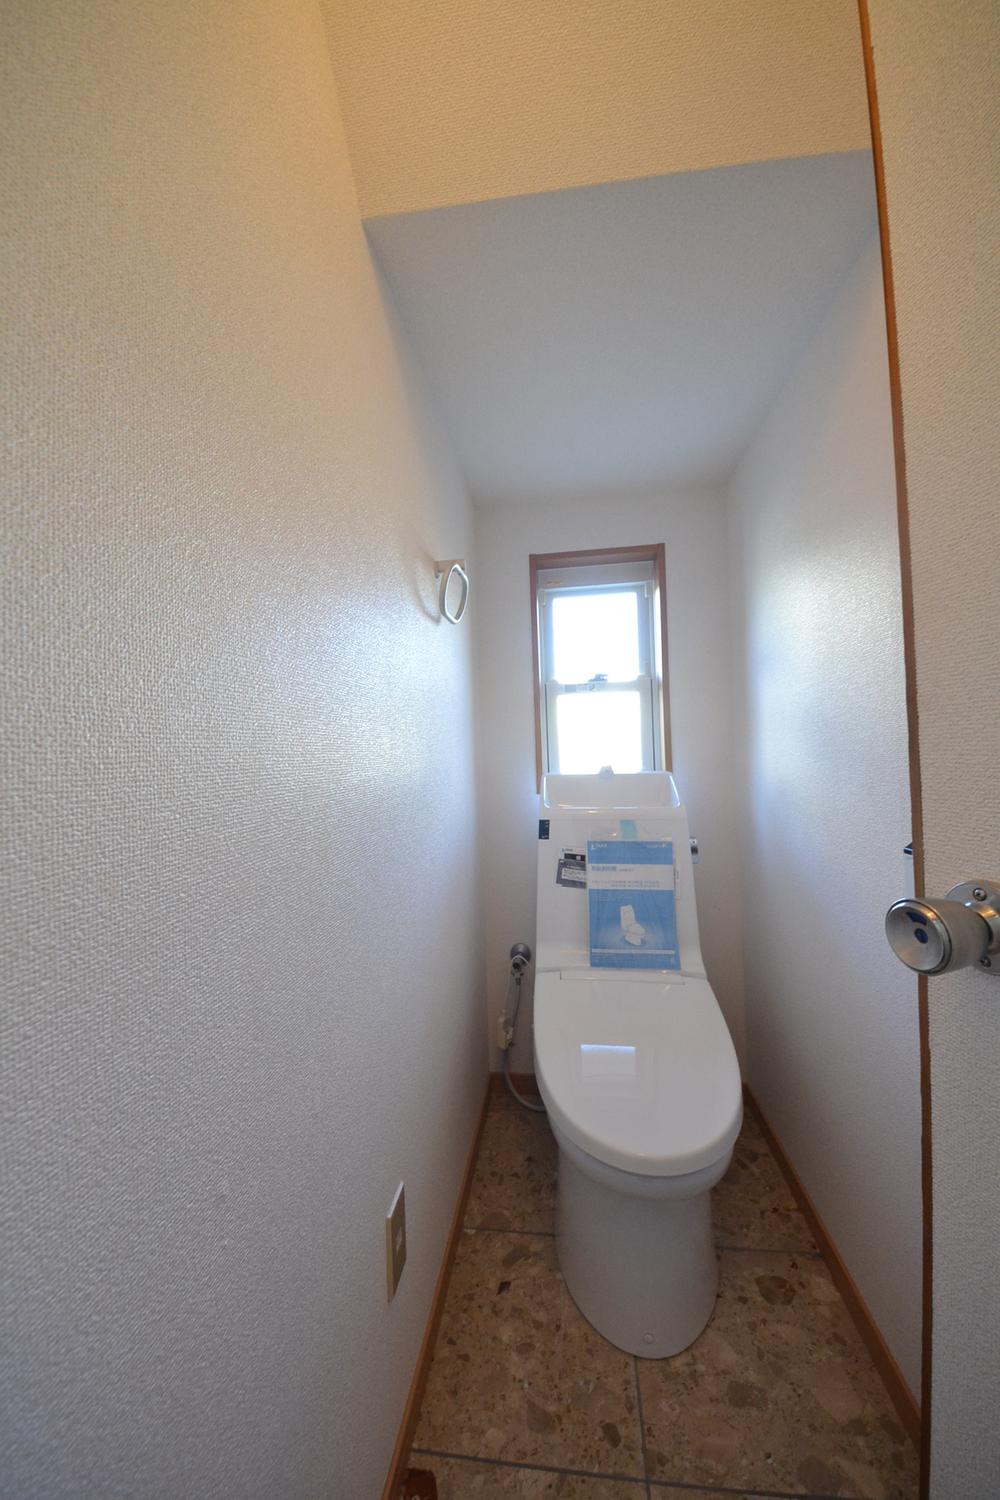 Toilet. Indoor (December 26, 2013) Shooting